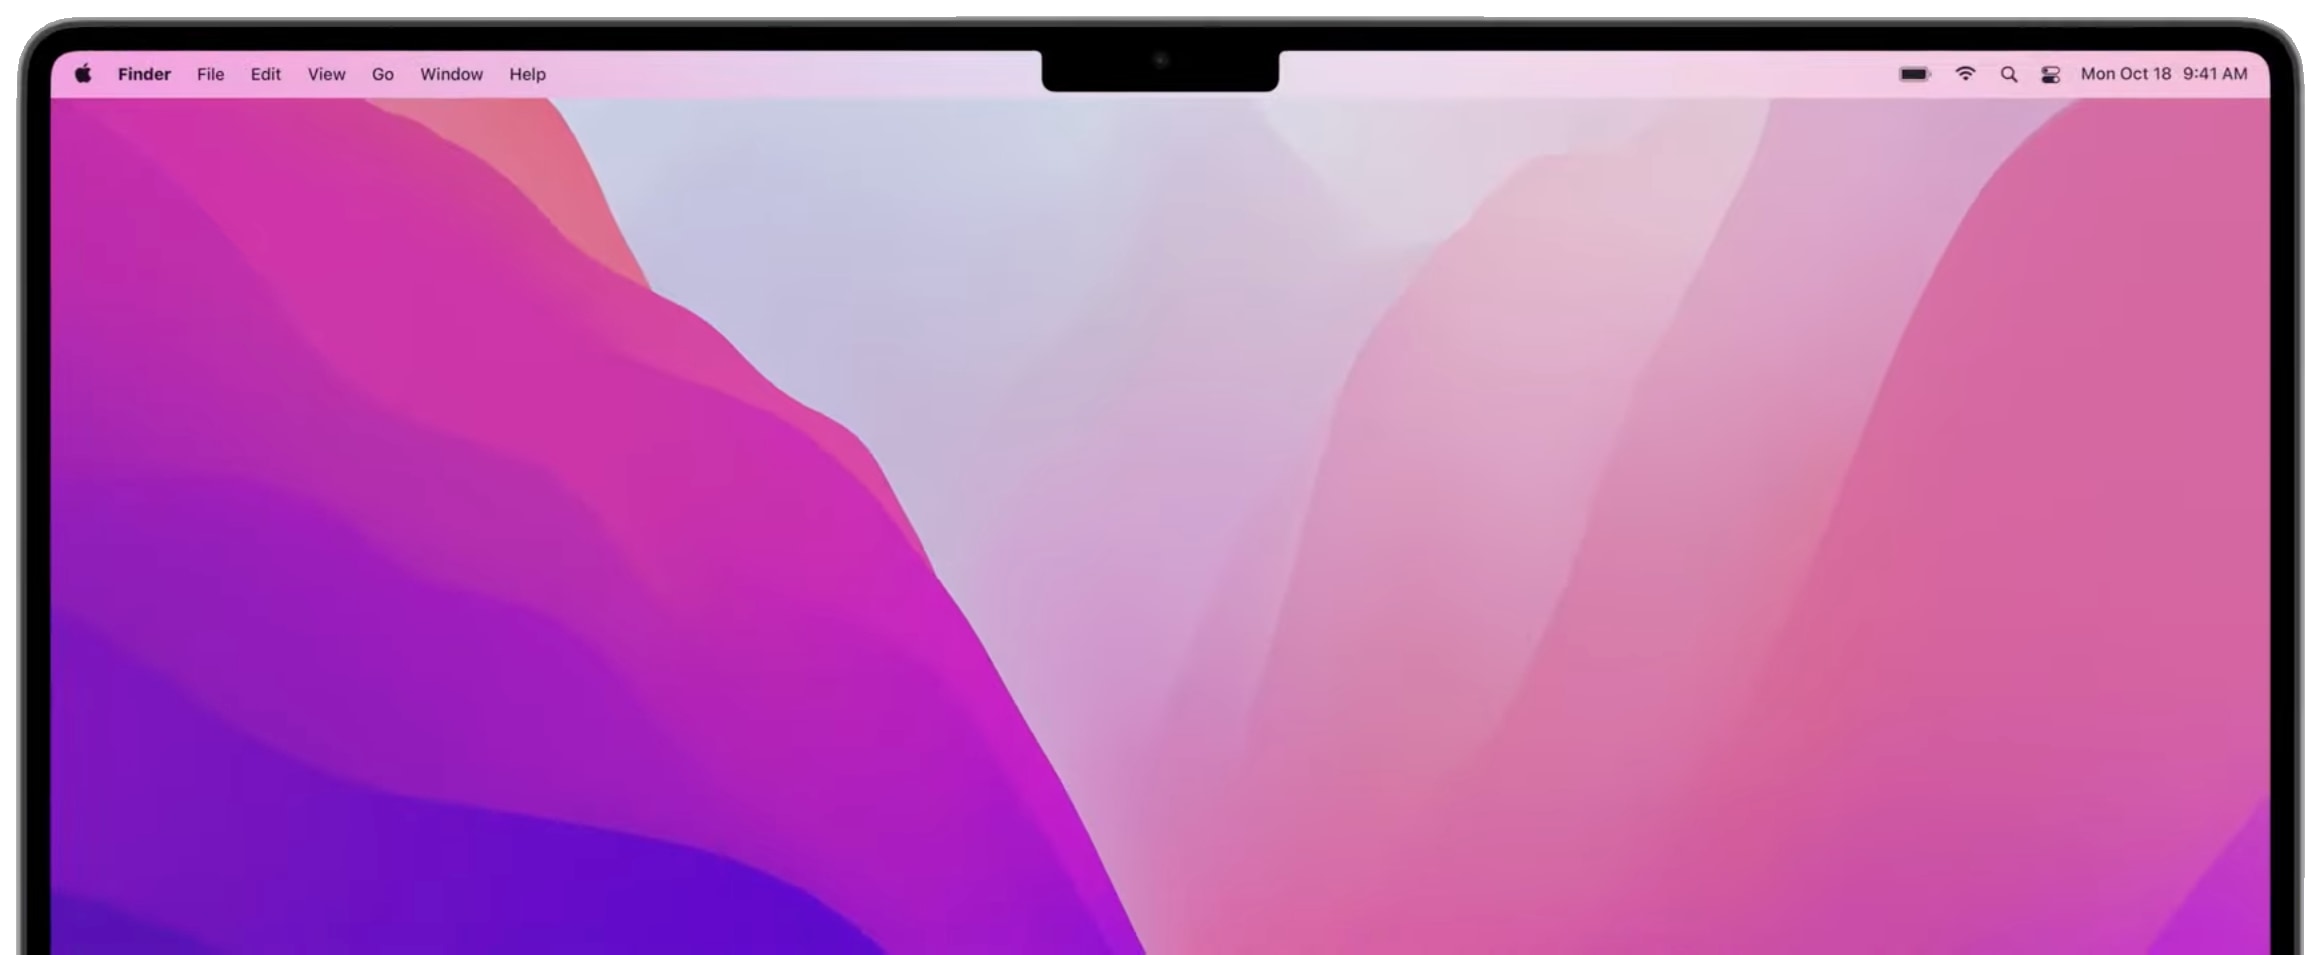 De marketingafbeelding van Apple met de inkeping samen met de menubalk op de opnieuw ontworpen MacBook Pro uit het jaar 2021